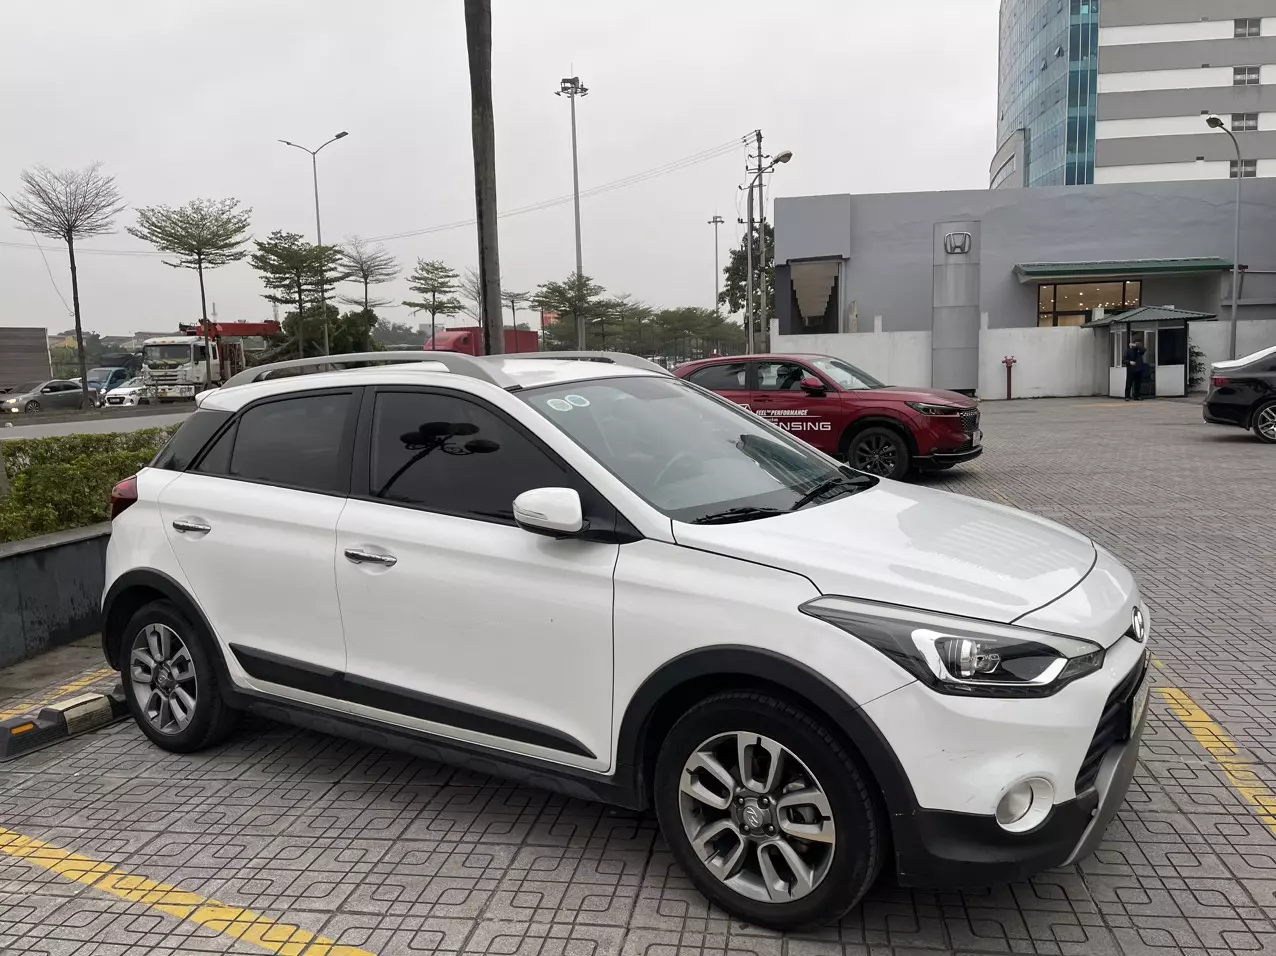 Chính chủ bán xe Hyundai i20 active 2017 trắng còn mới - Giá : 410 triệu.-1